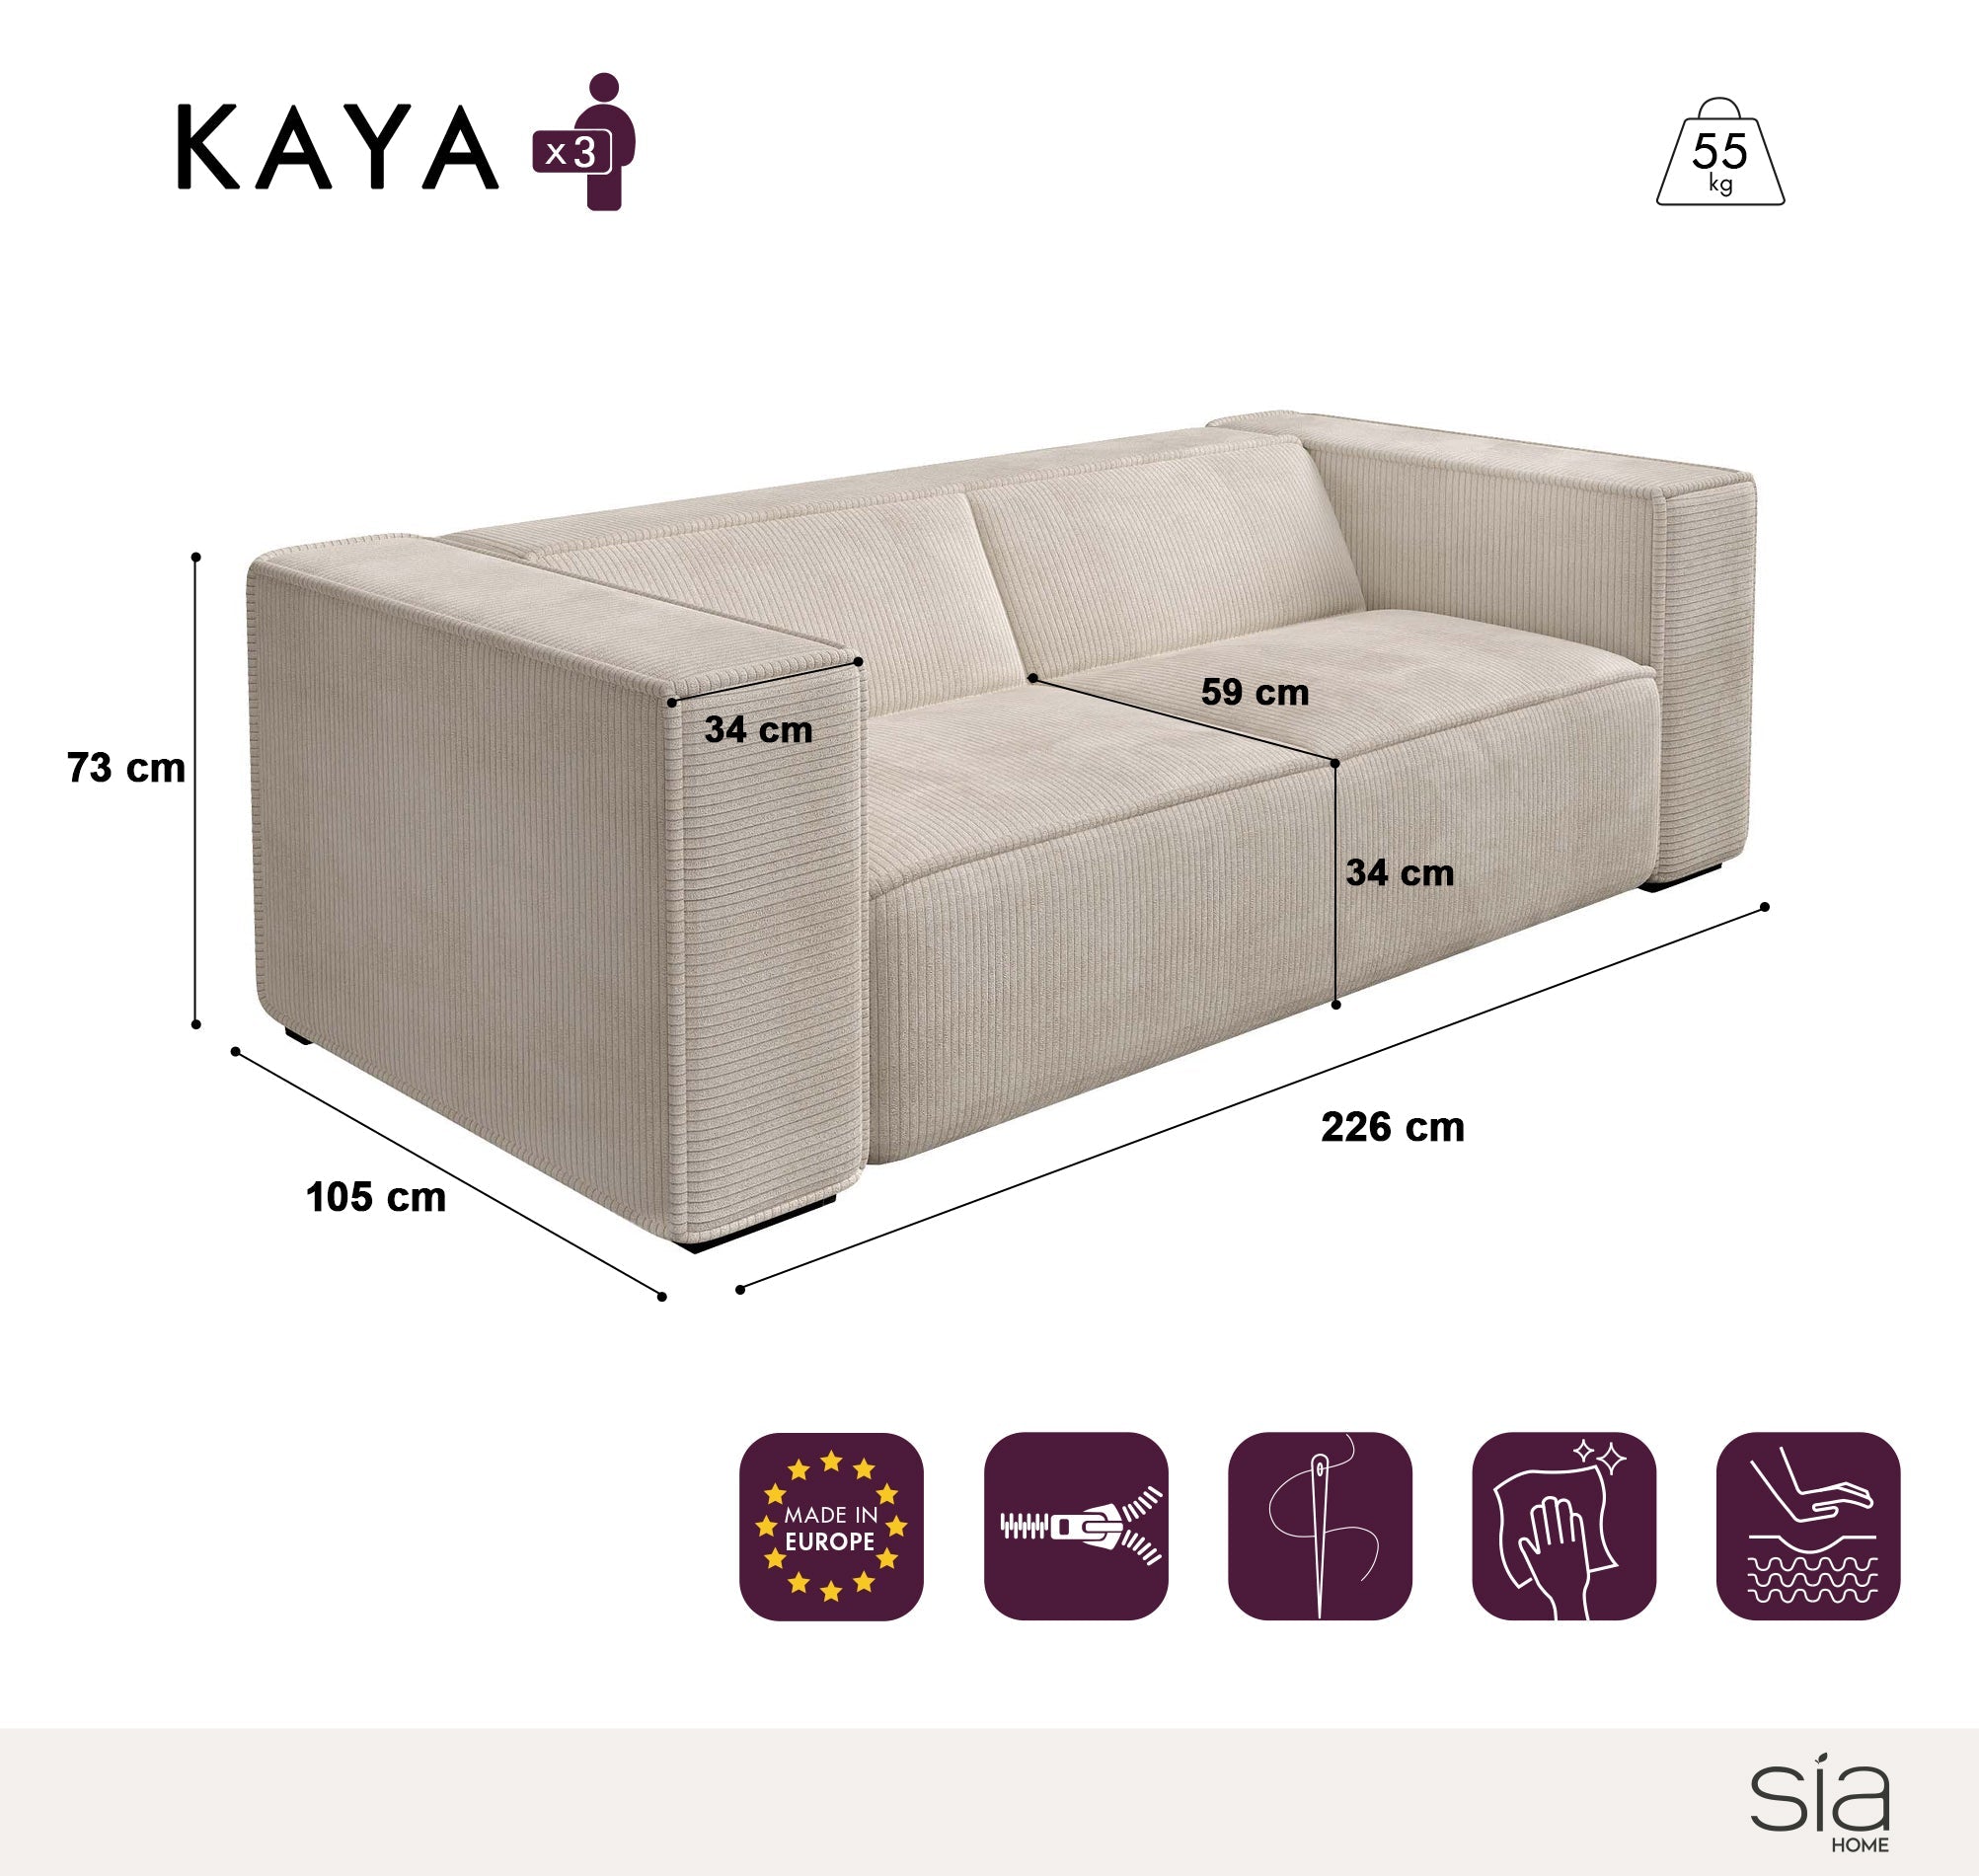 Canapé Kaya